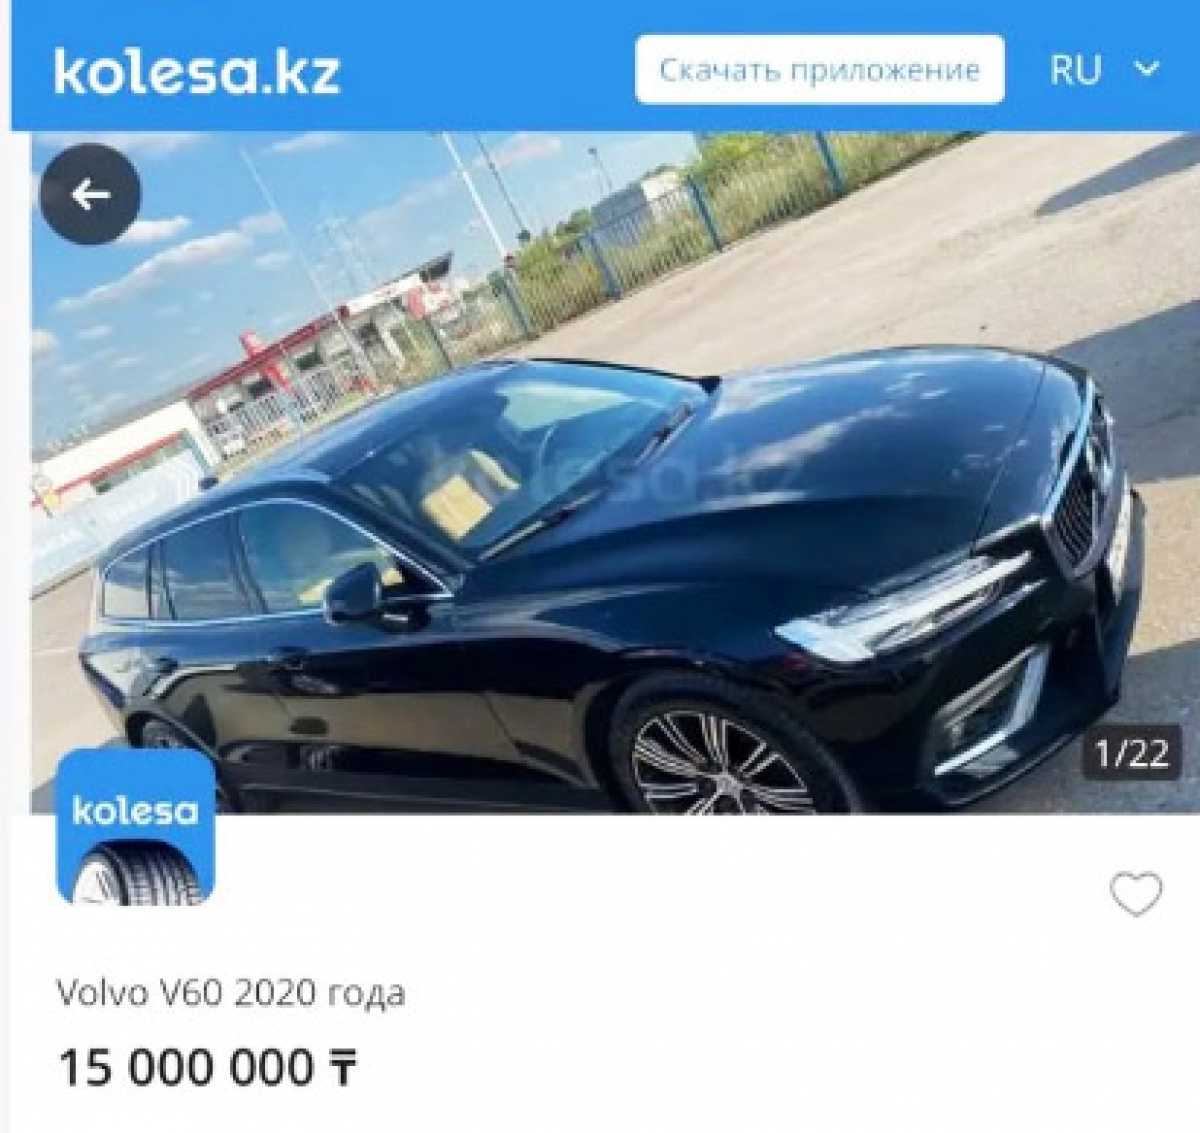 Угнанные российские авто продают в Казахстане